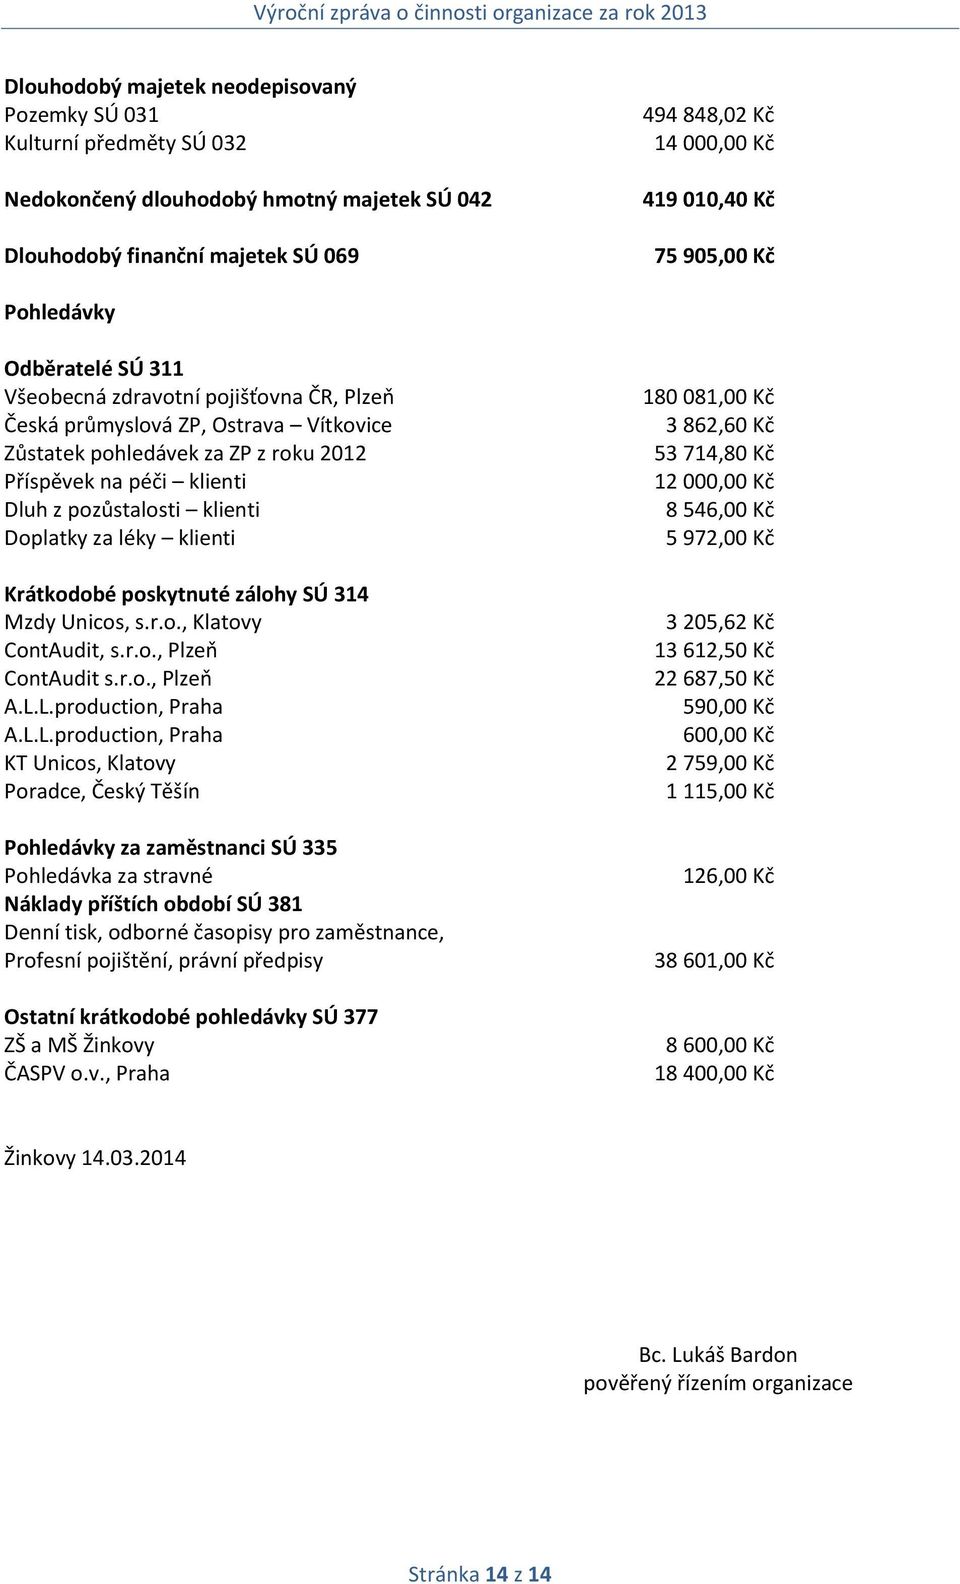 pozůstalosti klienti Doplatky za léky klienti Krátkodobé poskytnuté zálohy SÚ 314 Mzdy Unicos, s.r.o., Klatovy ContAudit, s.r.o., Plzeň ContAudit s.r.o., Plzeň A.L.